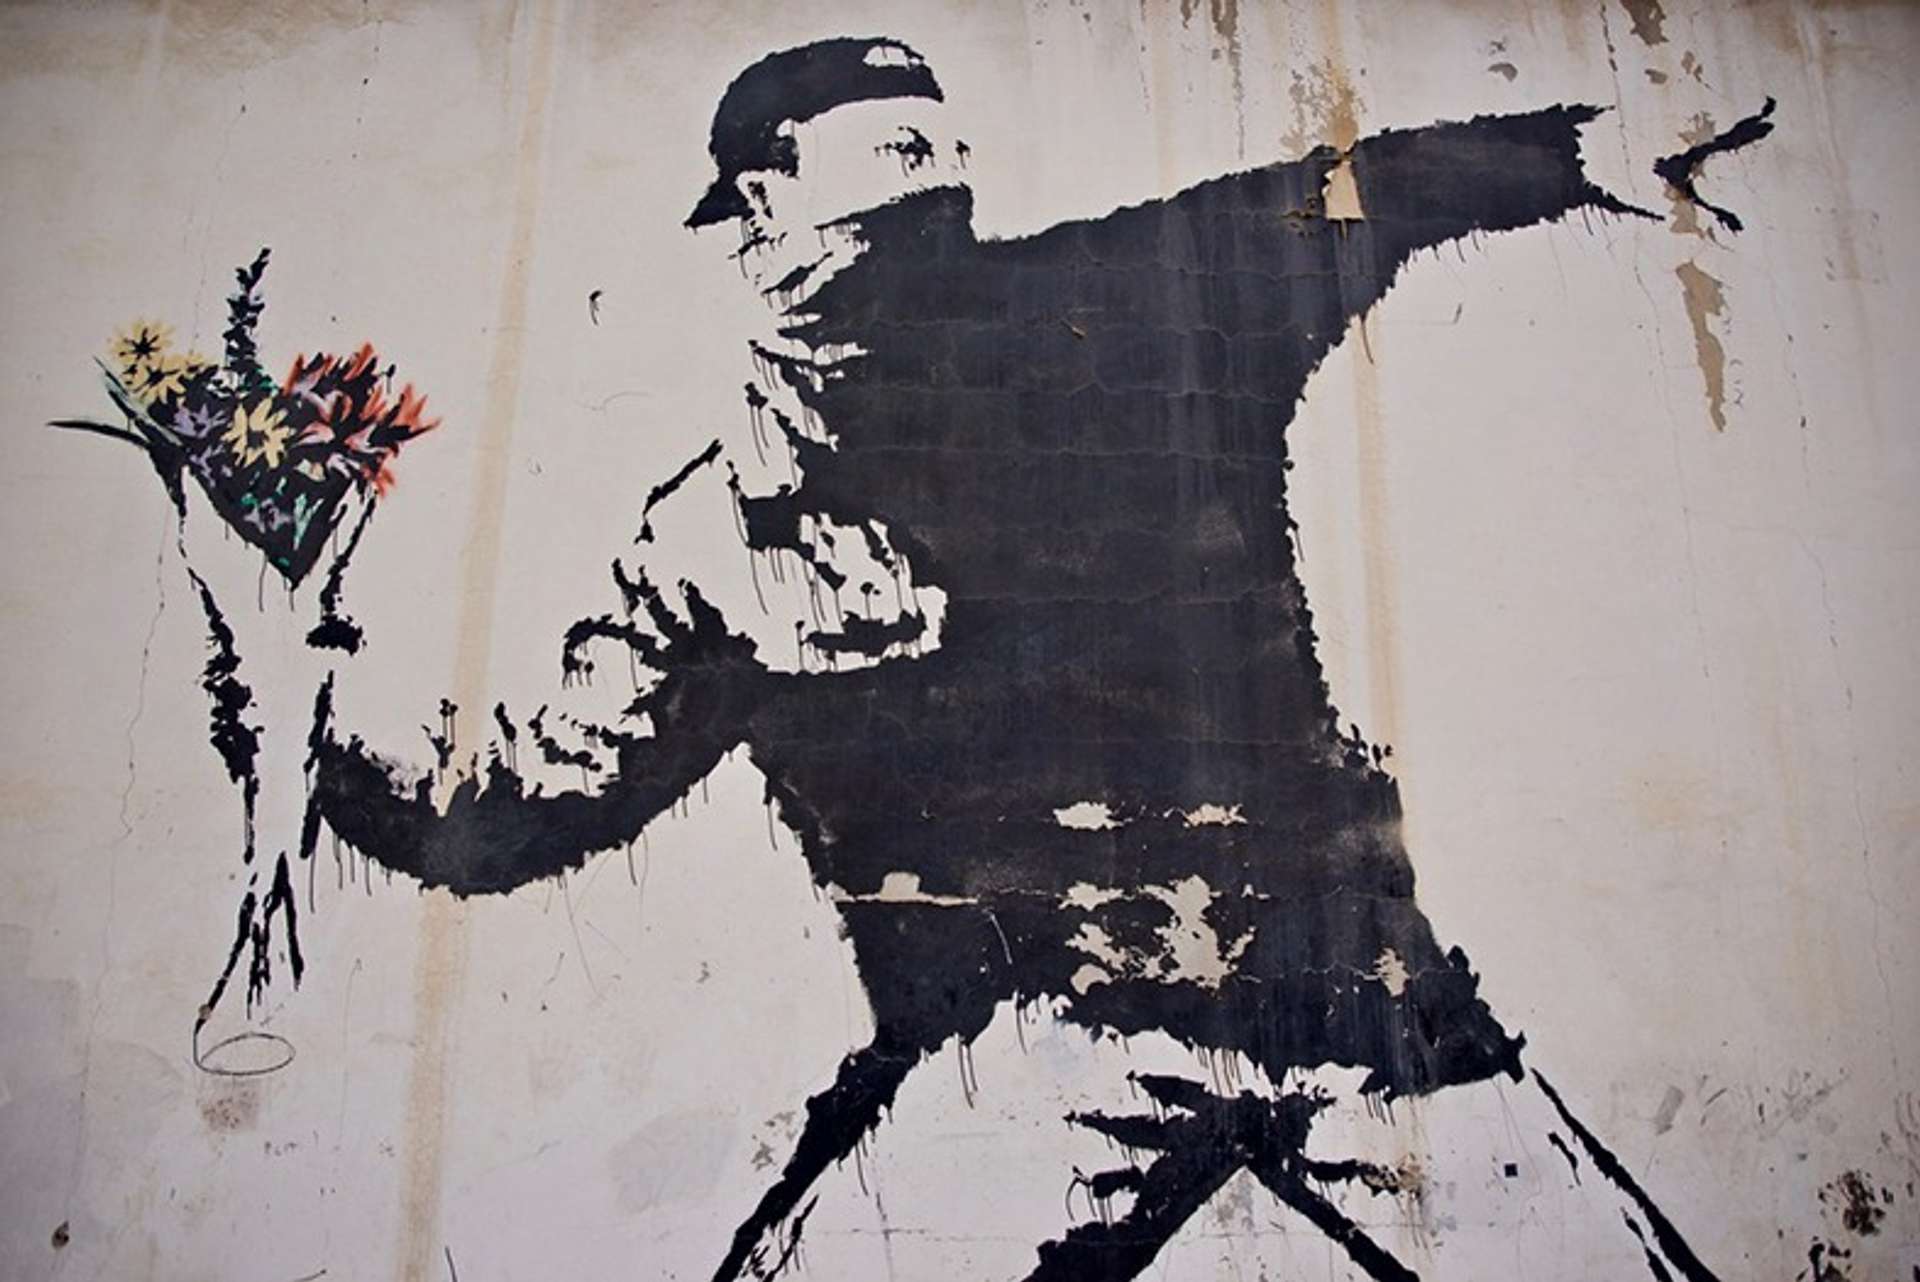 Flower Thrower Mural by Banksy - MyArtBroker